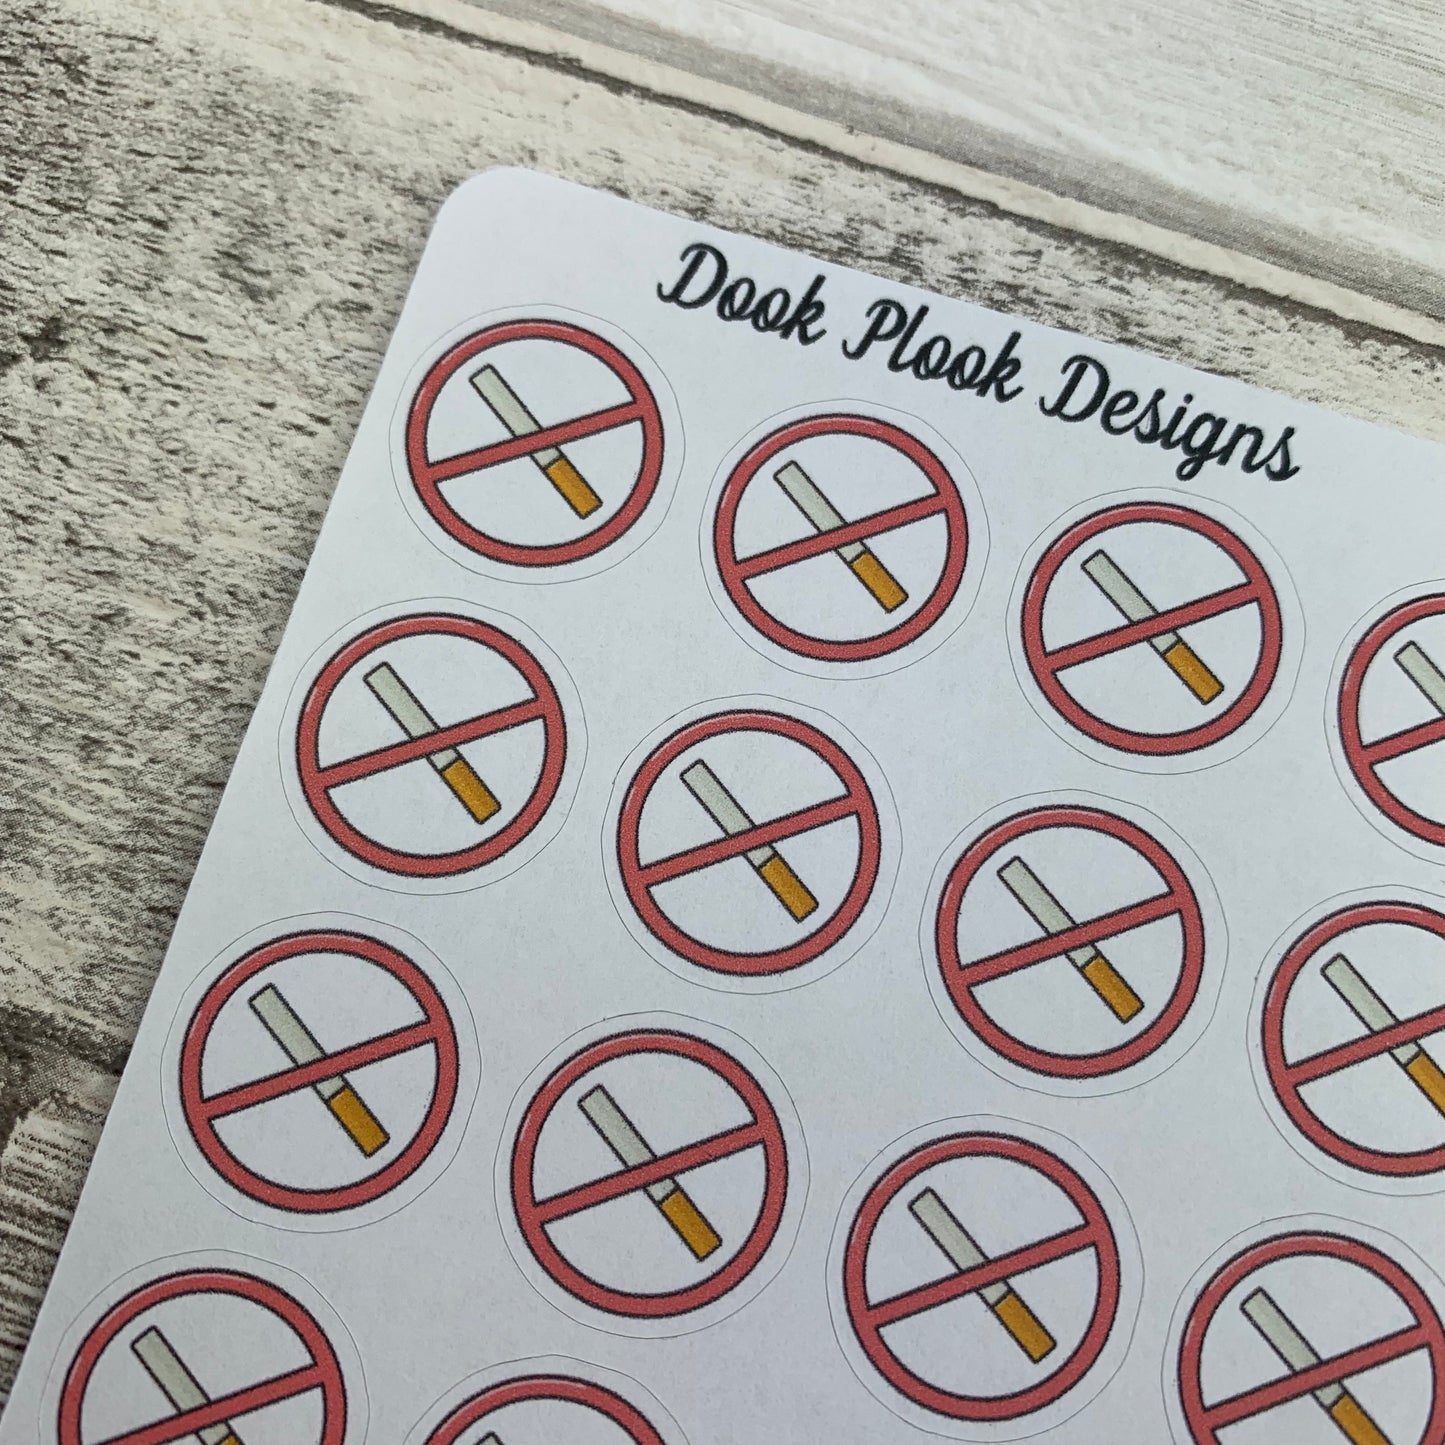 Stop smoking / smoke free stickers (DPD1043)